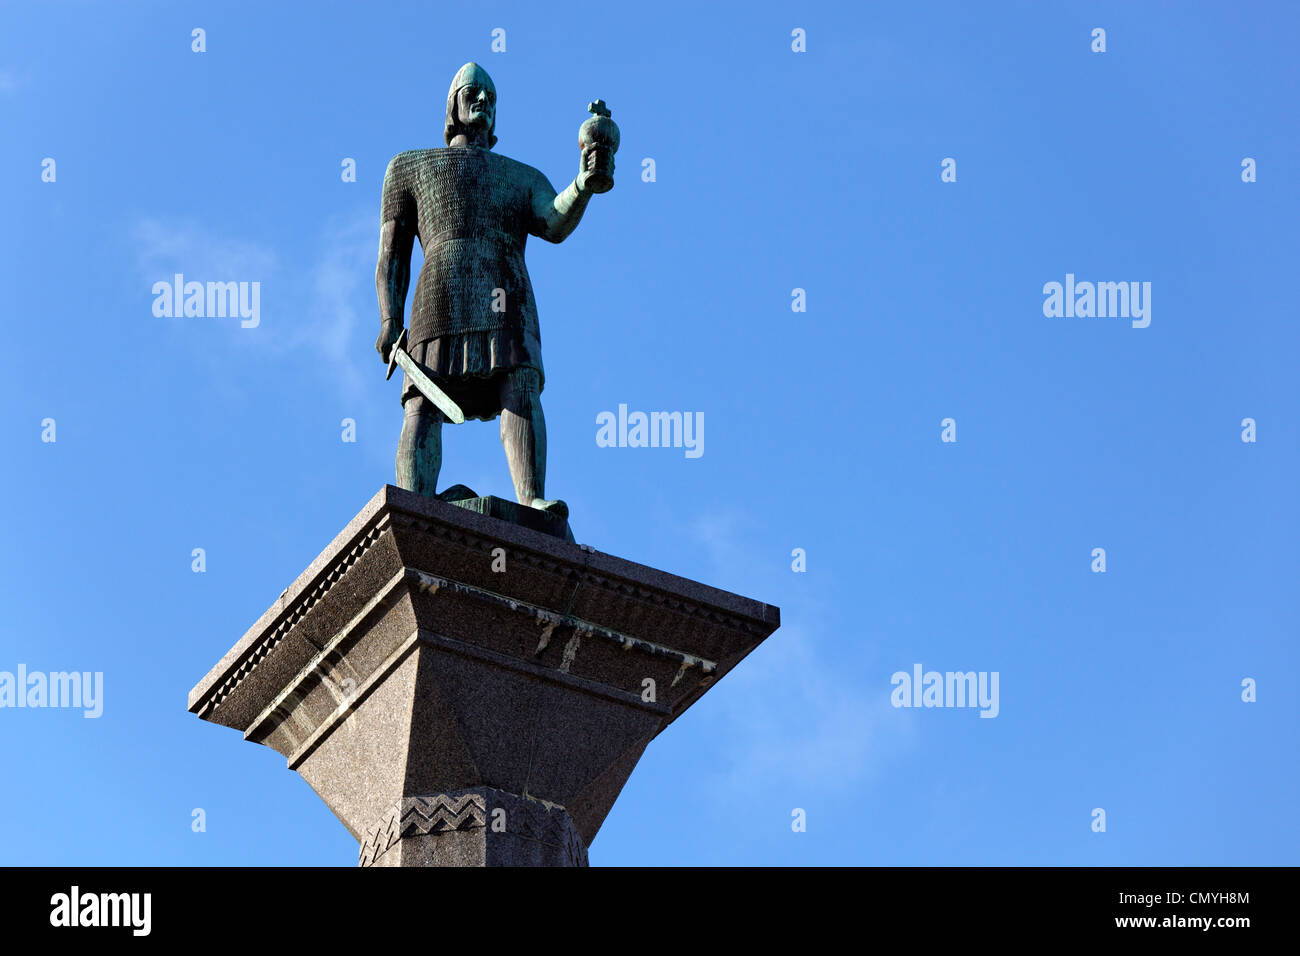 Norvegia, nella contea di Sor il Trondelag, Trondheim, Olav Tryggvason statua del Re di Norvegia da 995 a 1000, fondatore di Trondheim Foto Stock